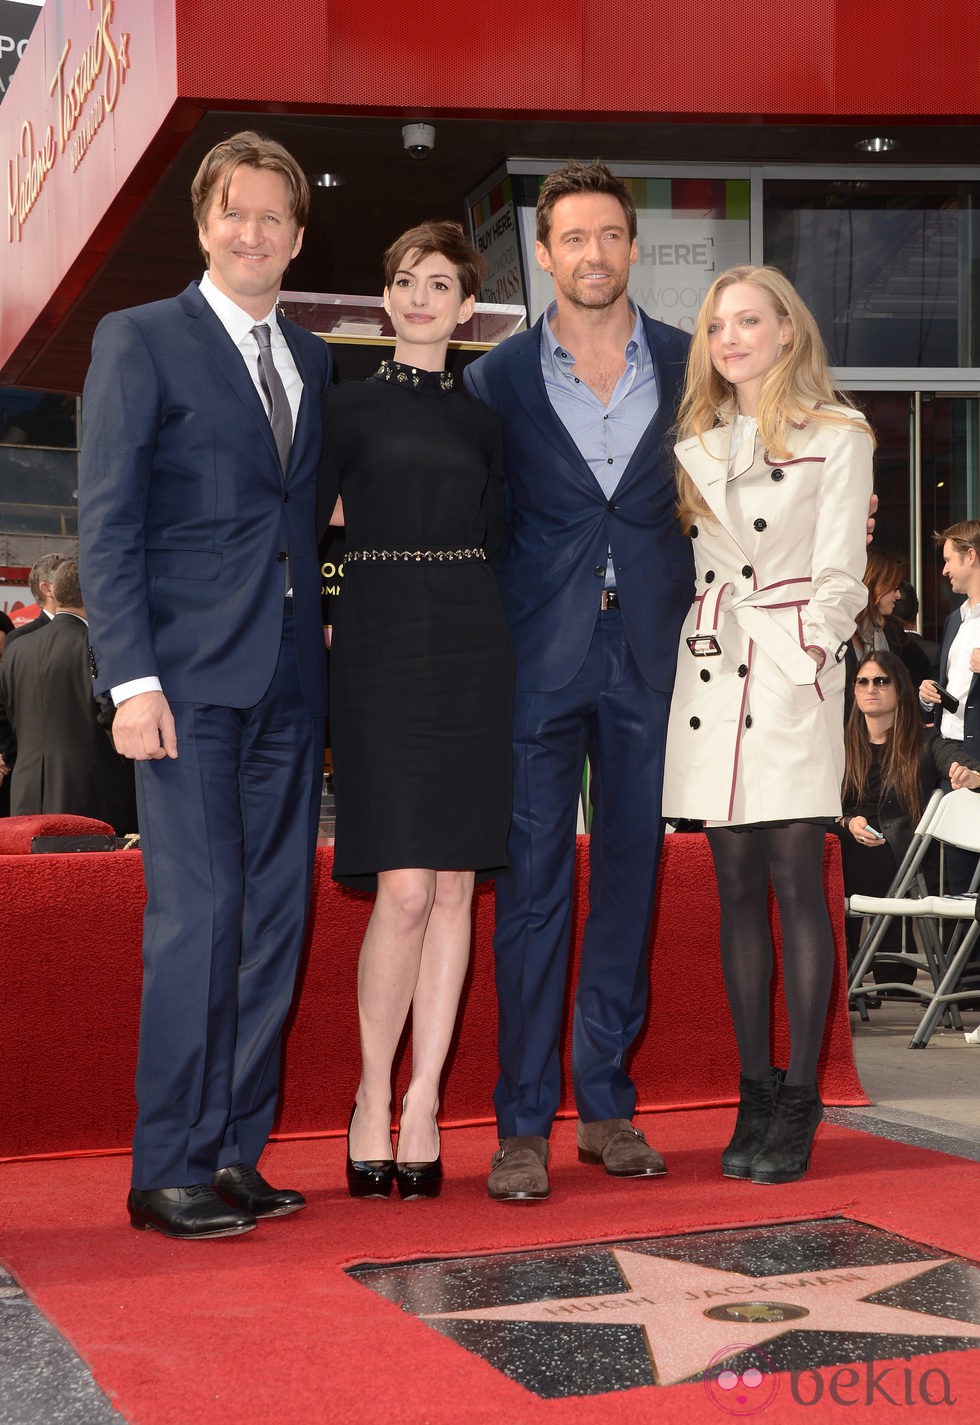 Tom Hooper, Anne Hathaway, Hugh Jackman y Amanda Seyfried en el Paseo de la Fama